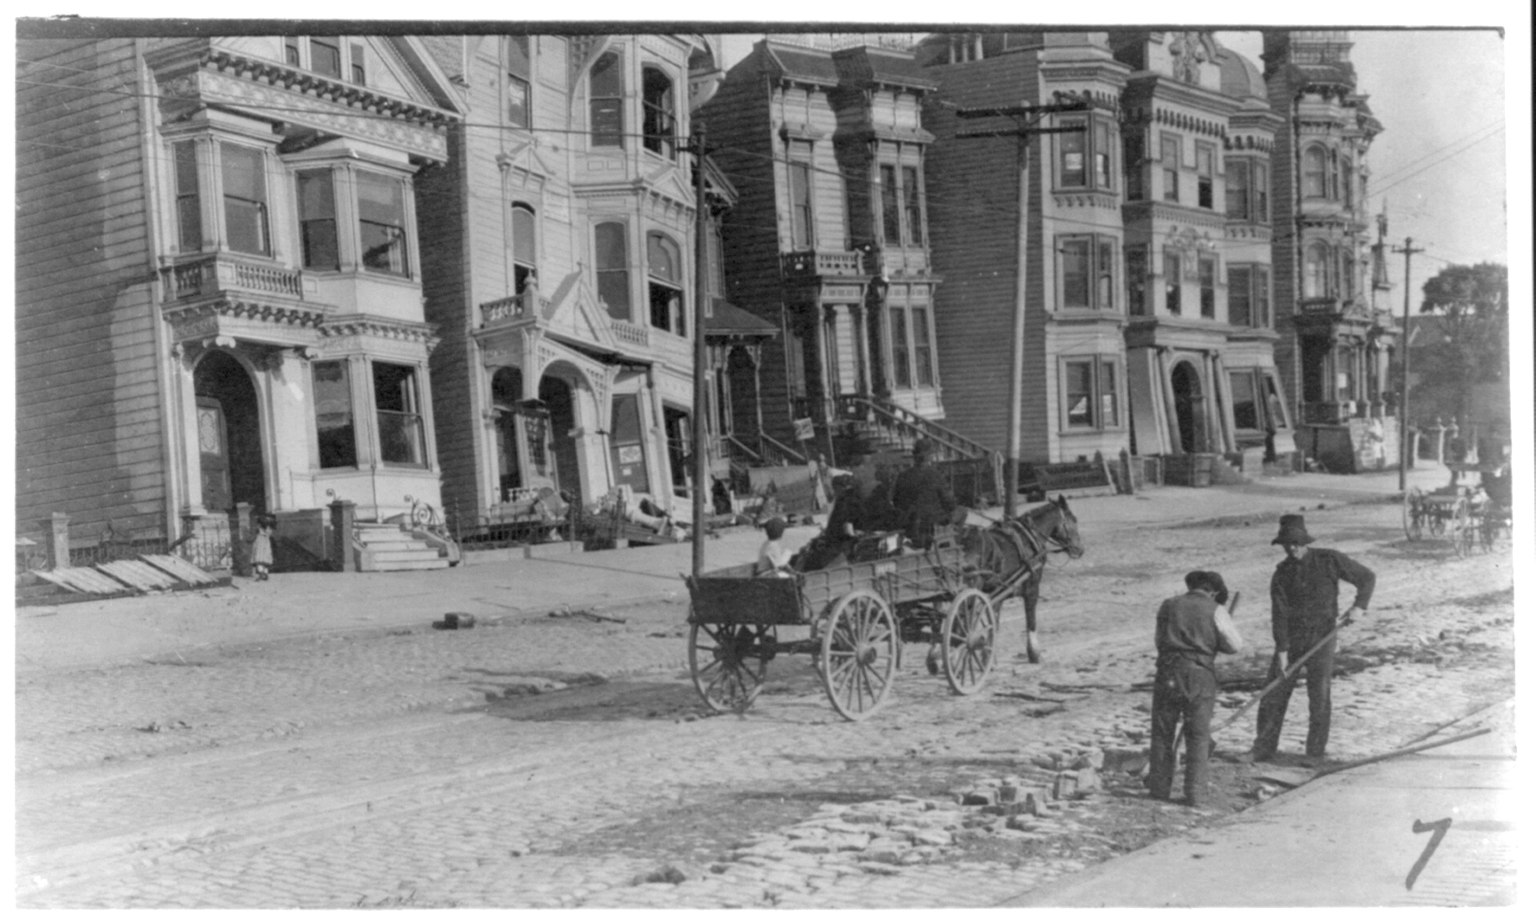 Terremoto de San Francisco de 1906